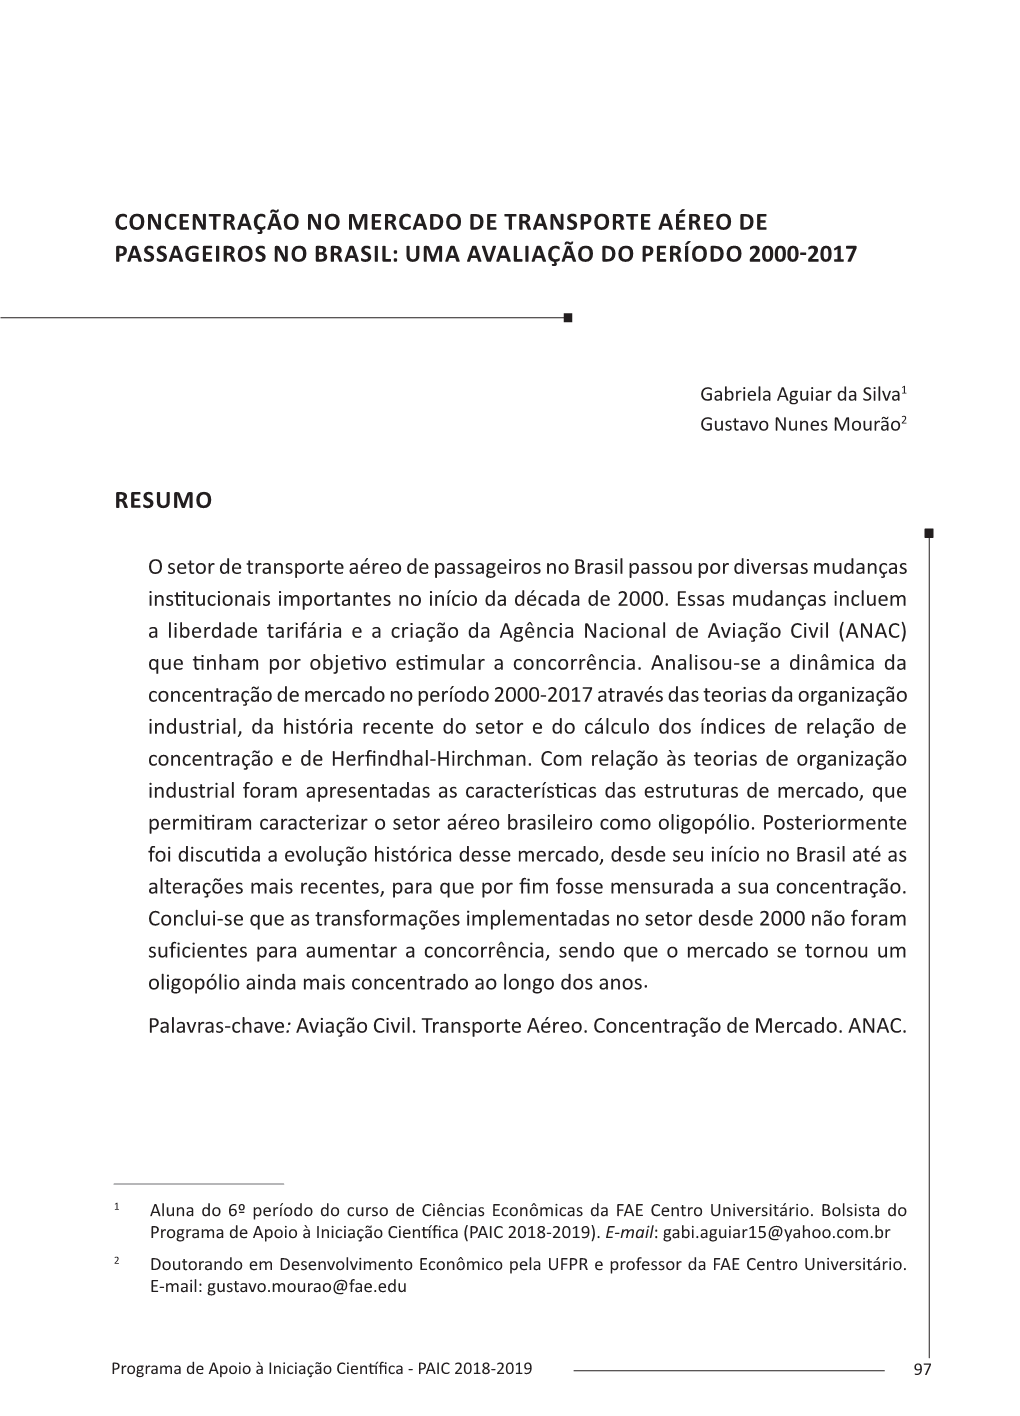 Concentração No Mercado De Transporte Aéreo De Passageiros No Brasil: Uma Avaliação Do Período 2000-2017